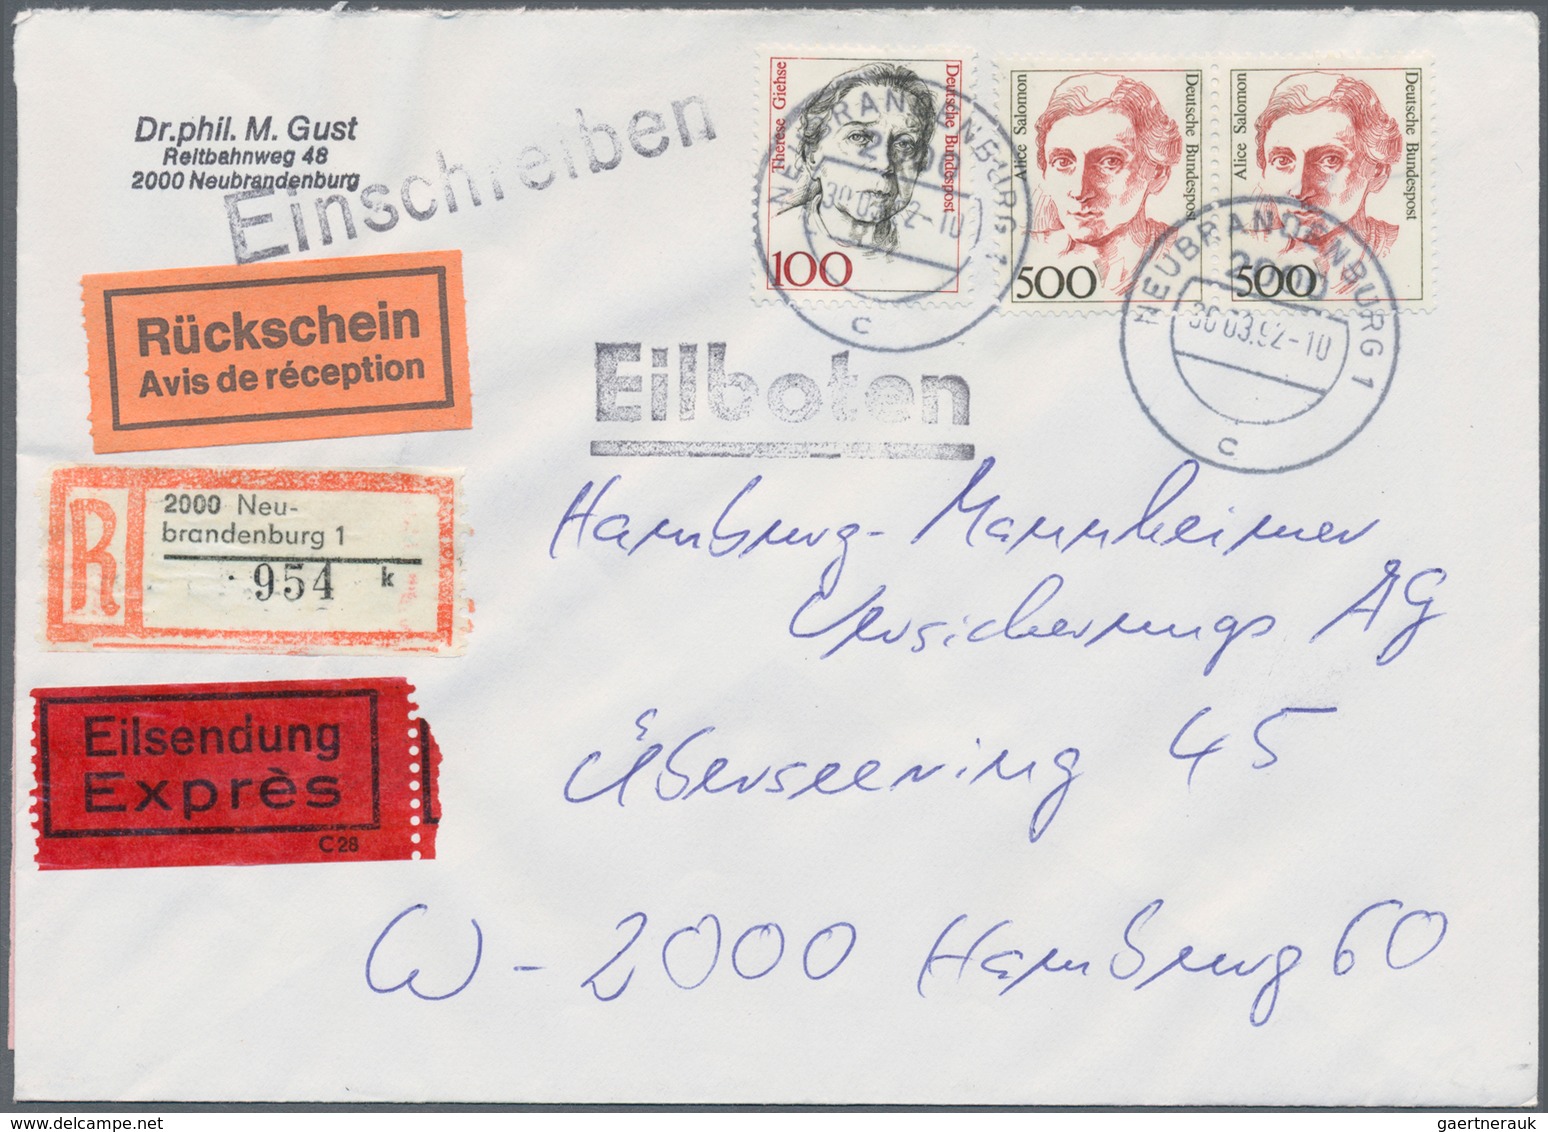 Bundesrepublik Deutschland: 1949/2019, umfassende Sammlung von ca. 4.330 Briefen und Karten, augensc